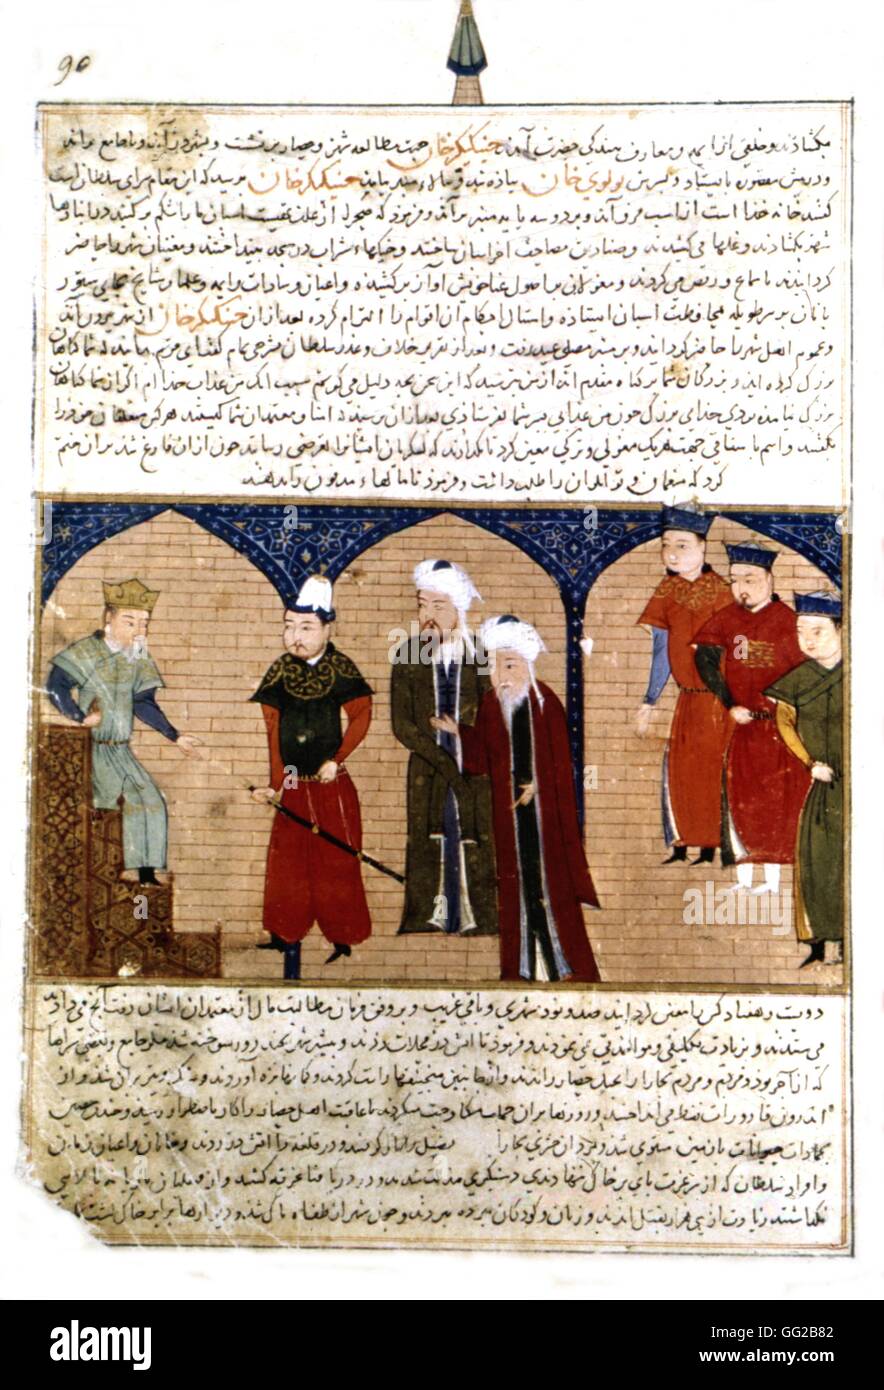 Il persiano manoscritto illustrato con 106 dipinti: 'Jami'al' Tawarikh da Rachid ad-Dîn (Storia dei Mongoli). Gengis Khan, sul trono circondato dai Mongoli. Scuola di persico del XIV secolo Foto Stock